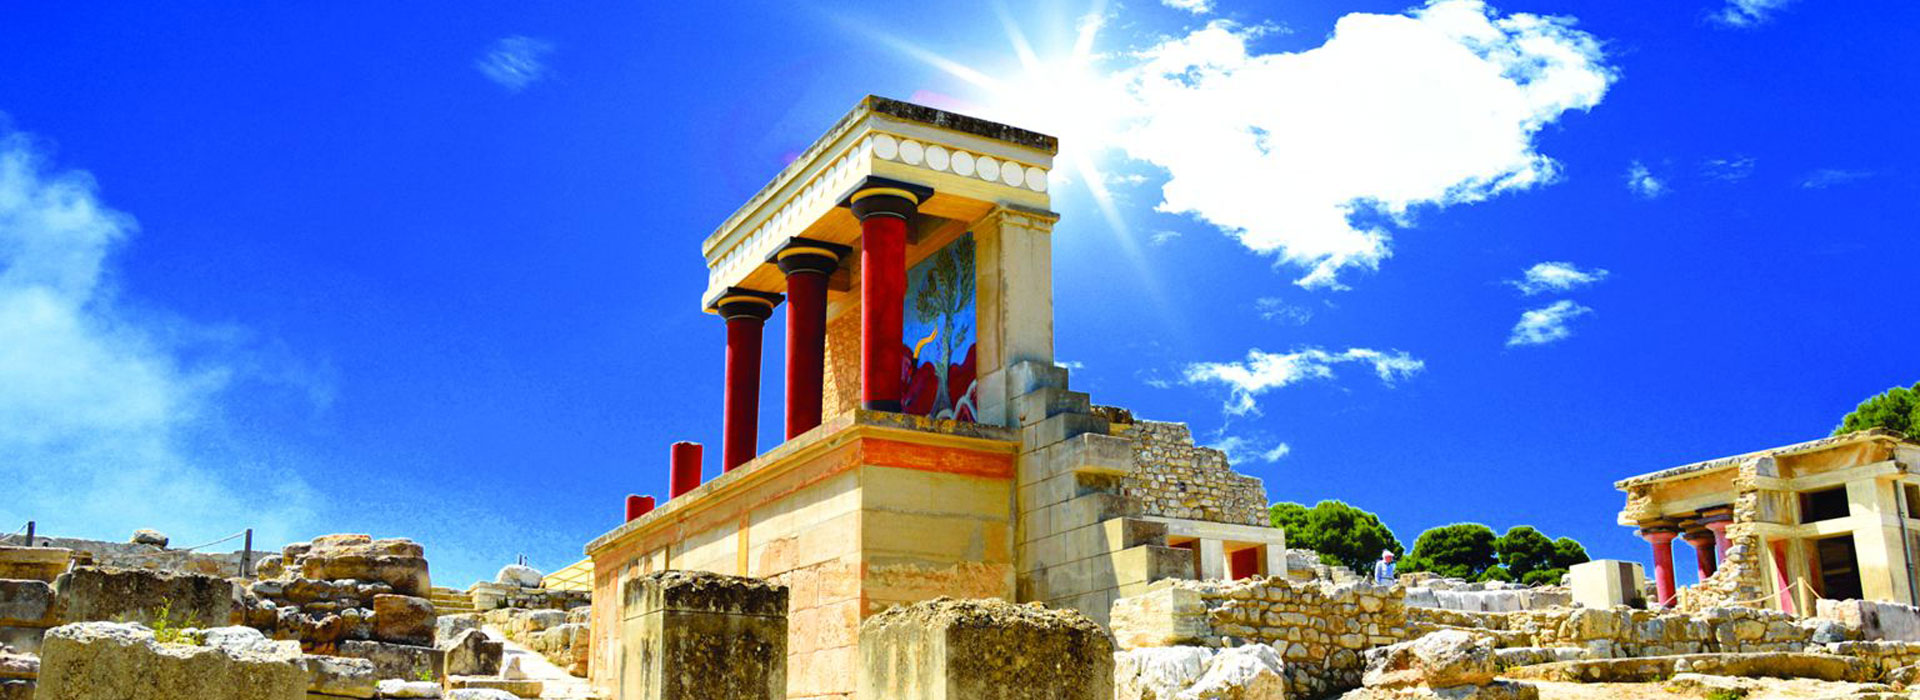 Knossos Palace and Heraklion City